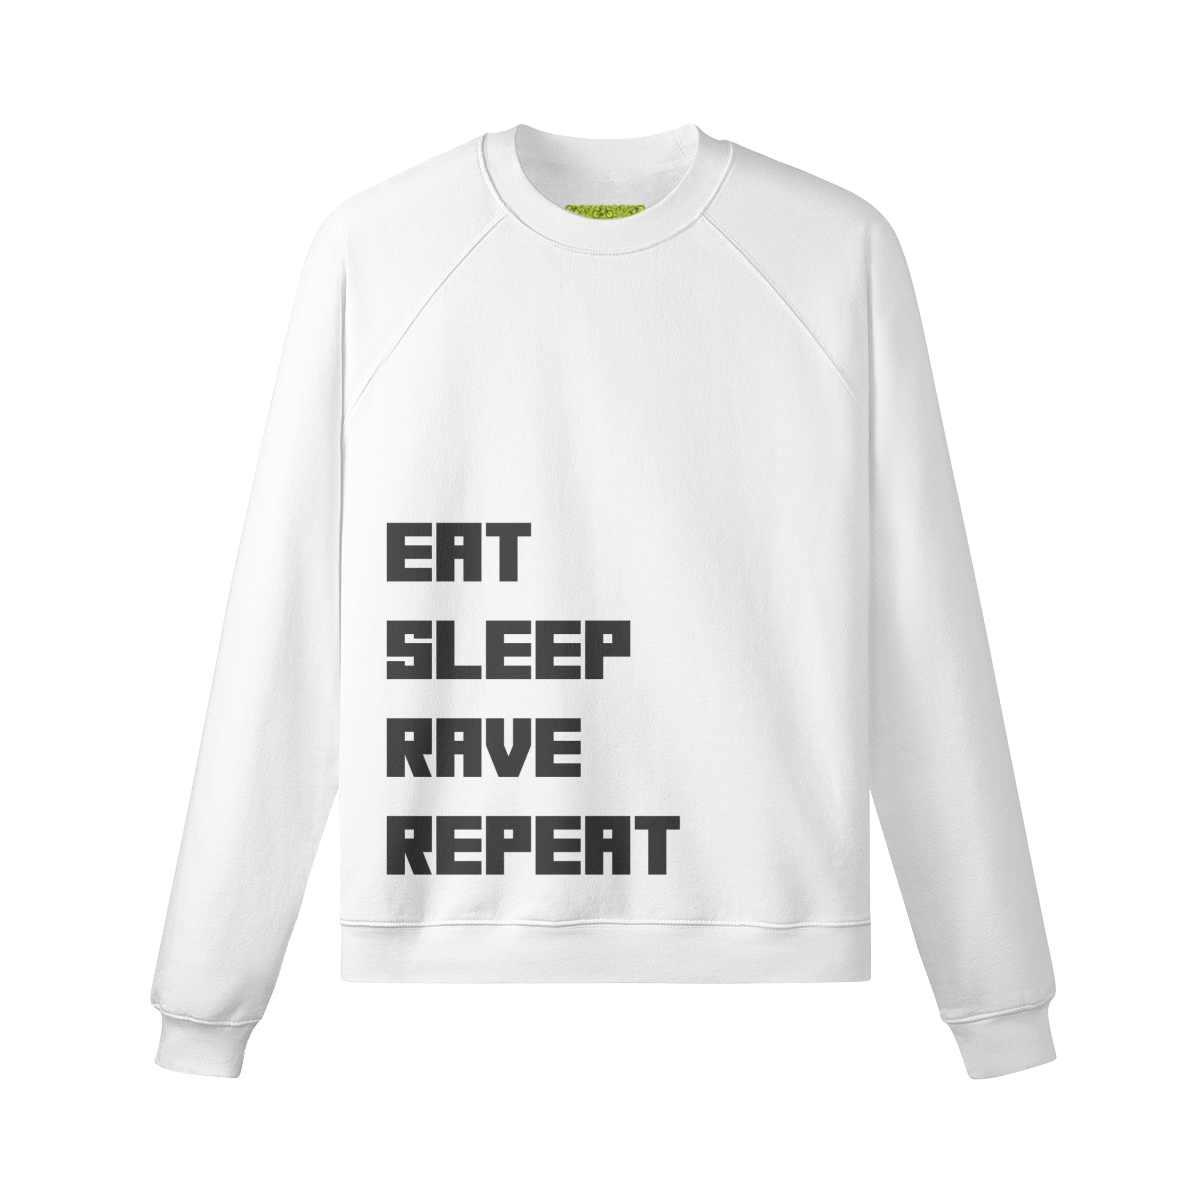 EAT.SLEEP.RAVE.REPEAT - Unisex Fleece-lined Sweatshirt